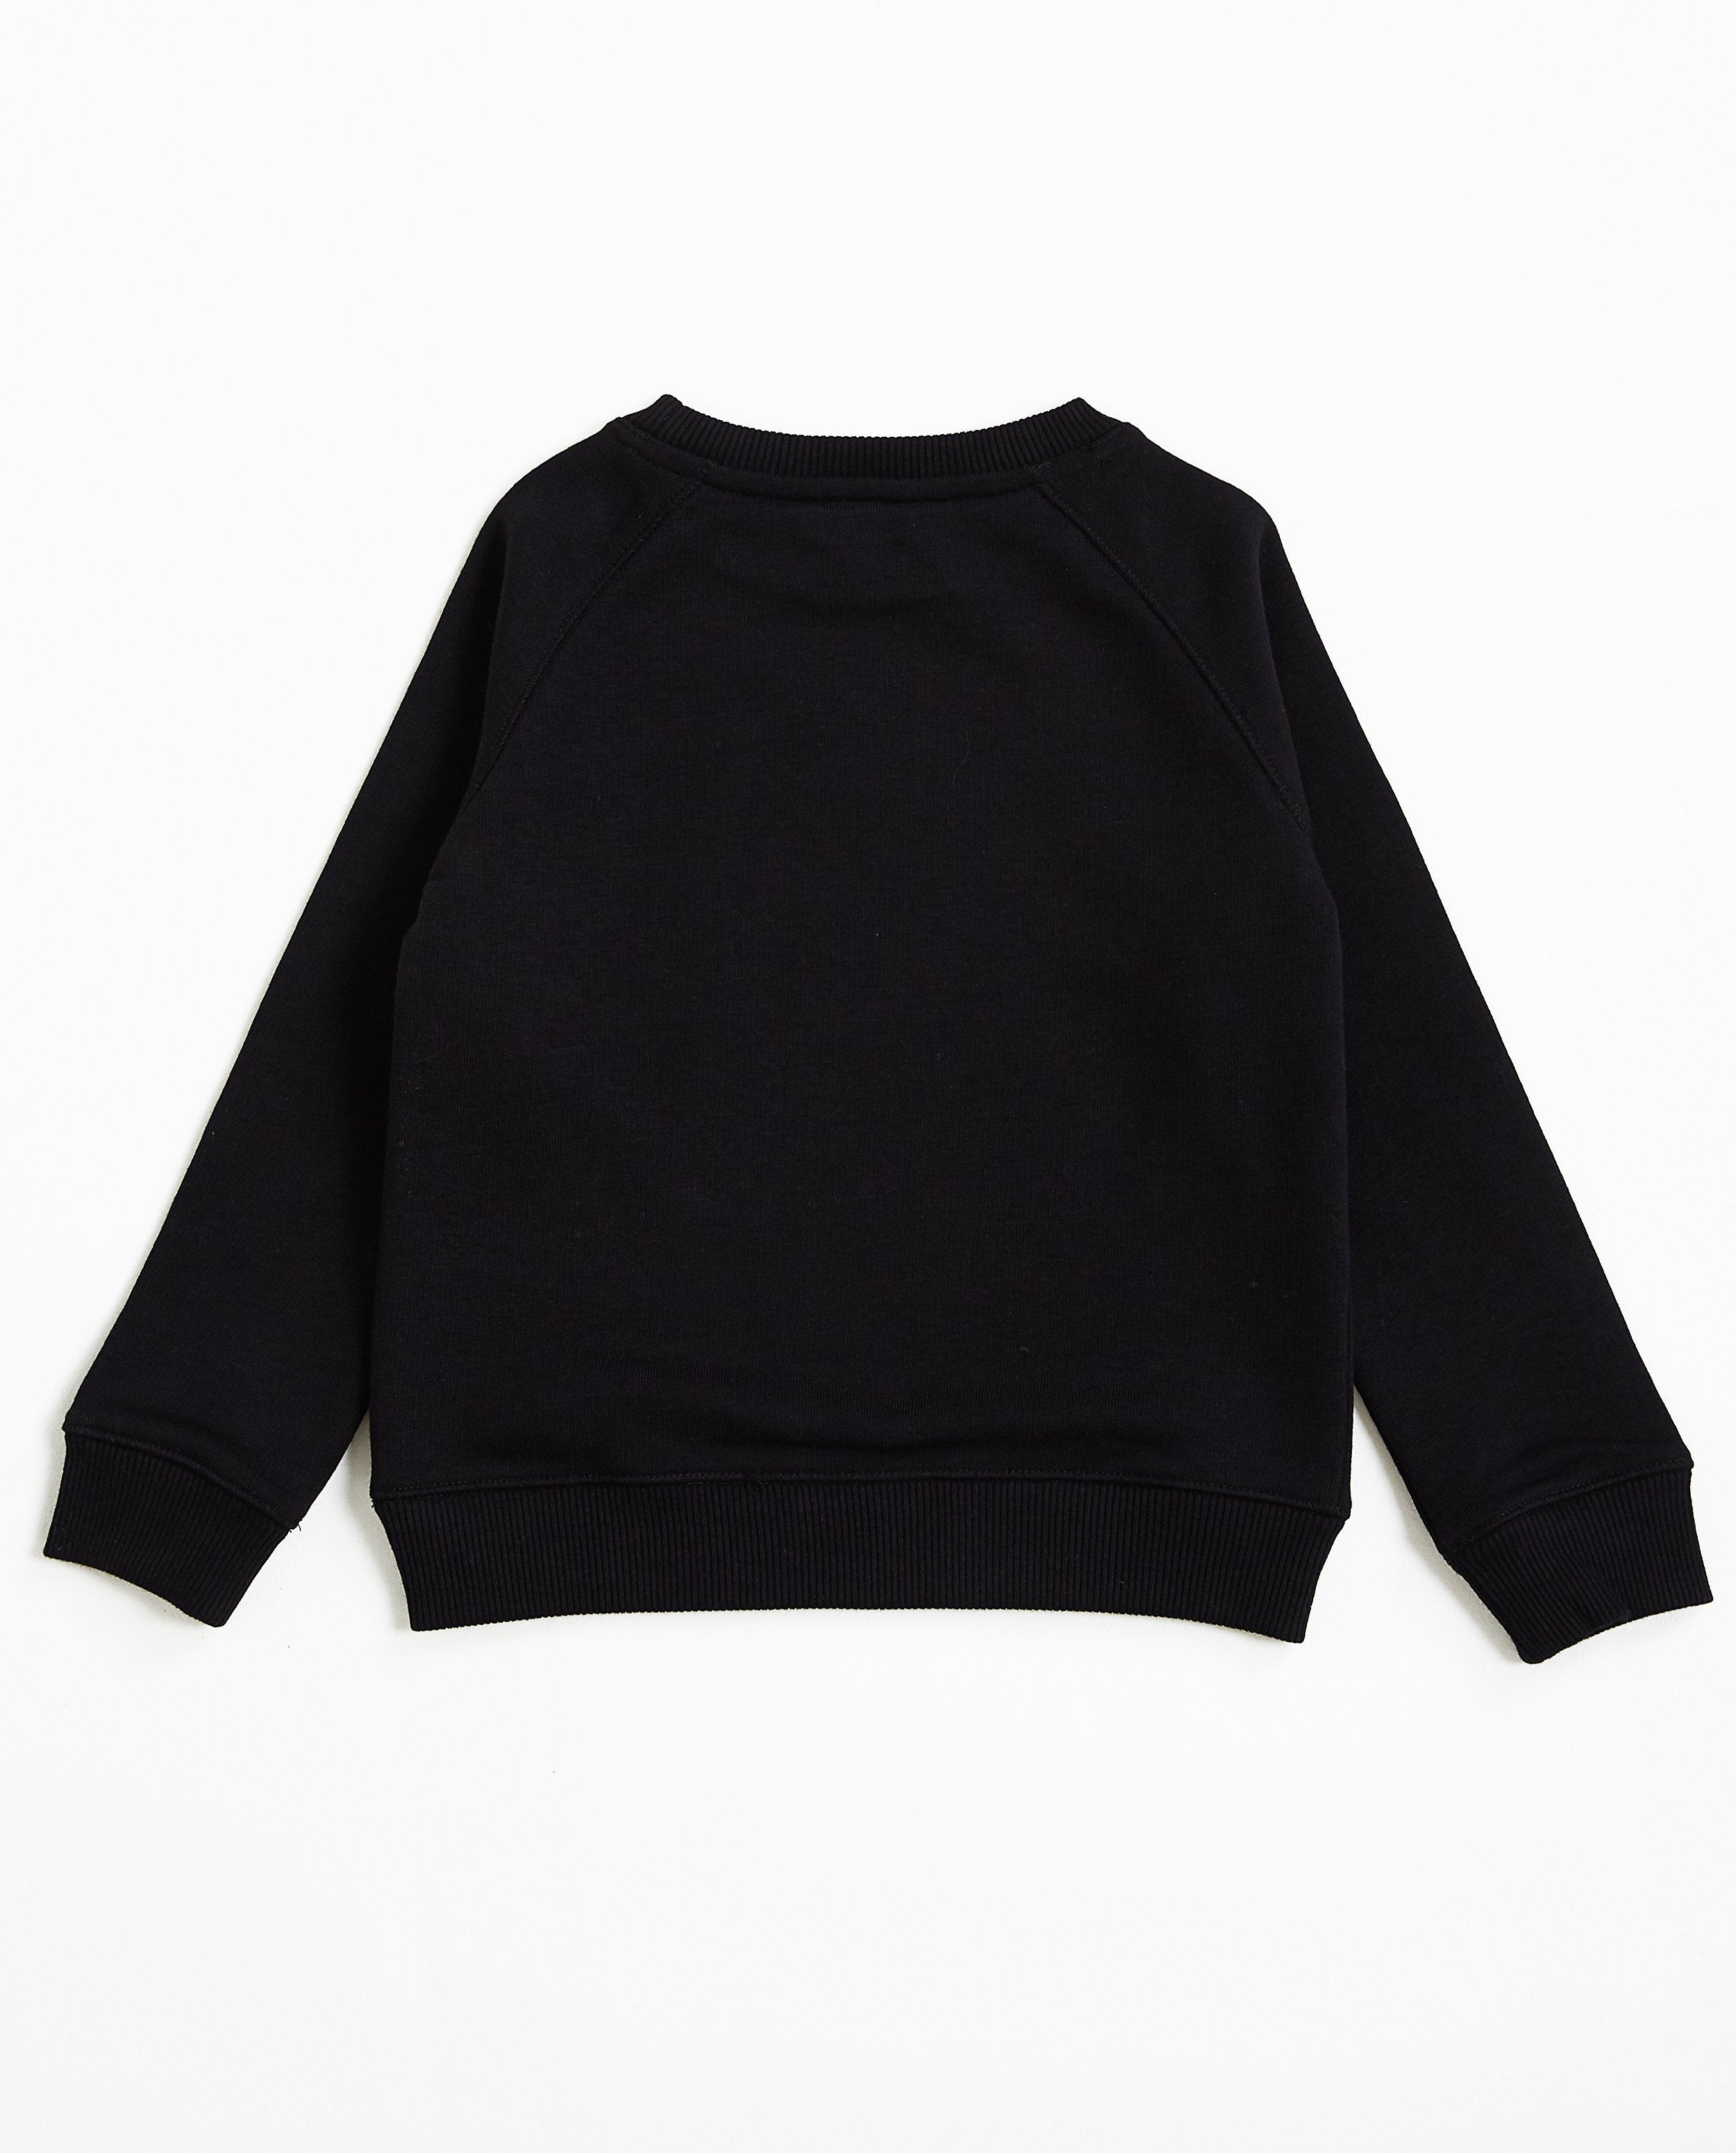 Sweaters - Zwarte sweater #familystoriesjbc